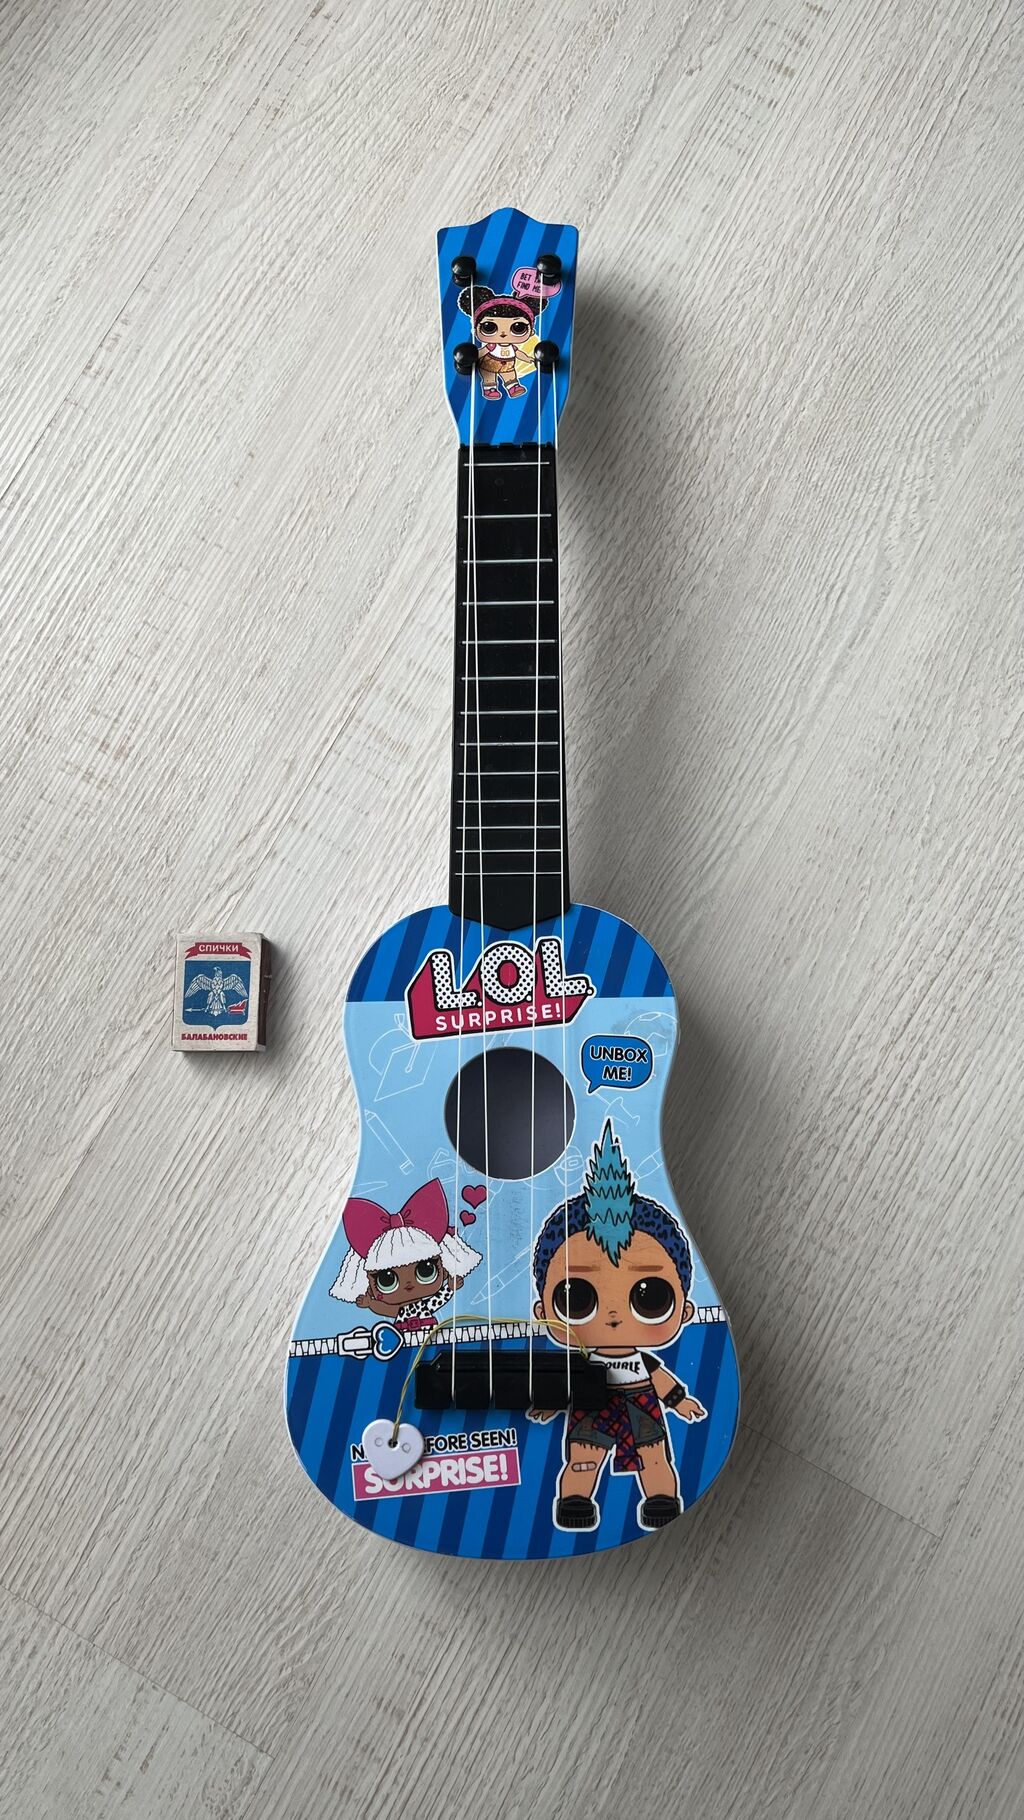 Уменьшенные (детские) гитары